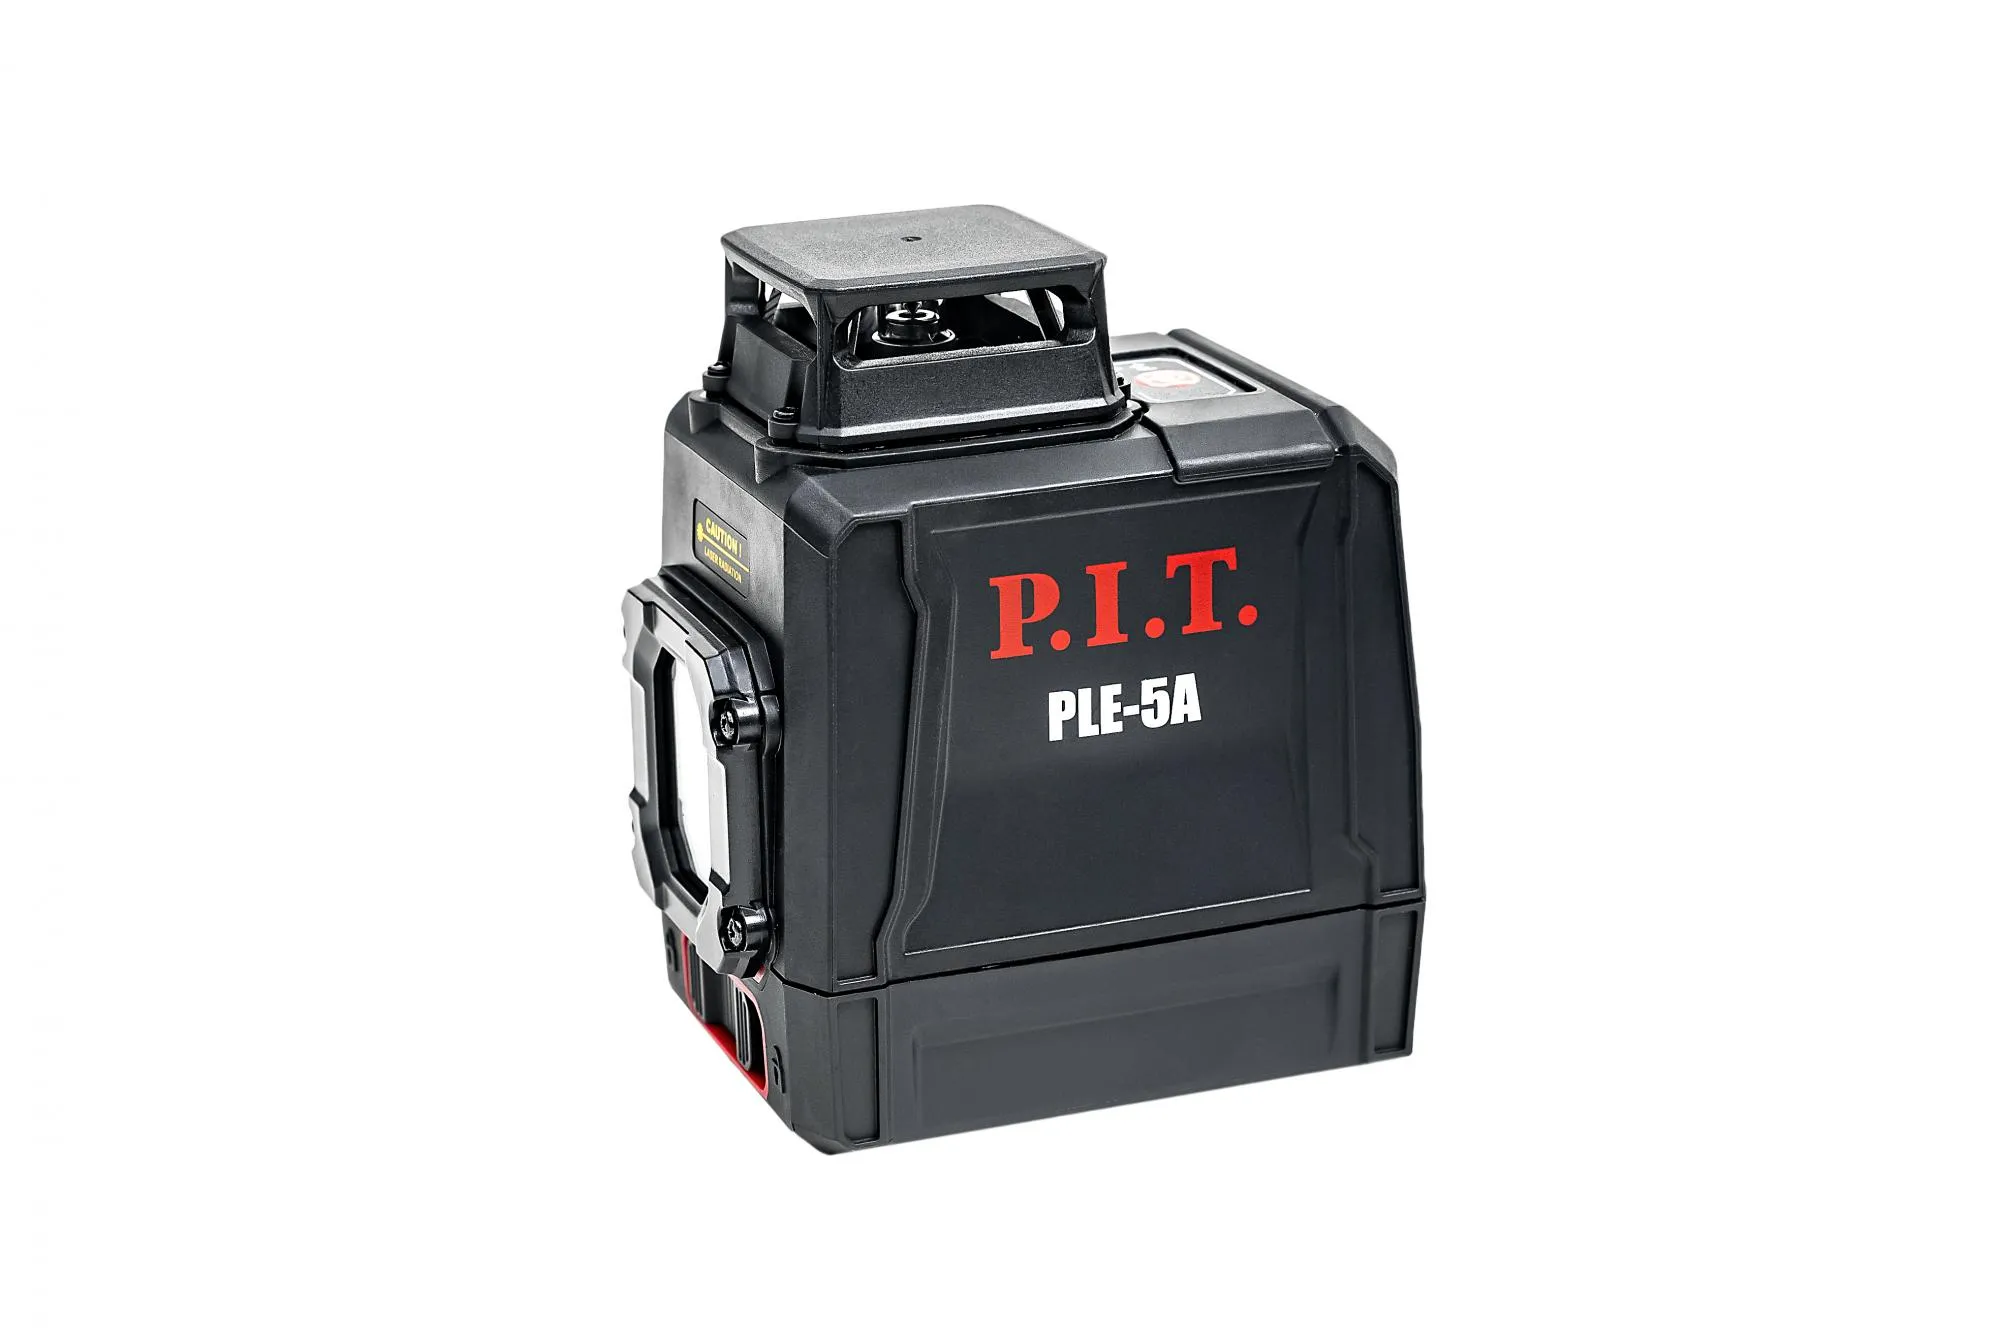 5 пле. Лазерный уровень ple-5а. Лазерный уровень Pit ple-5a. Лазерный уровень Pit ple-5a 45мм*360гр. Строительный лазер бат.